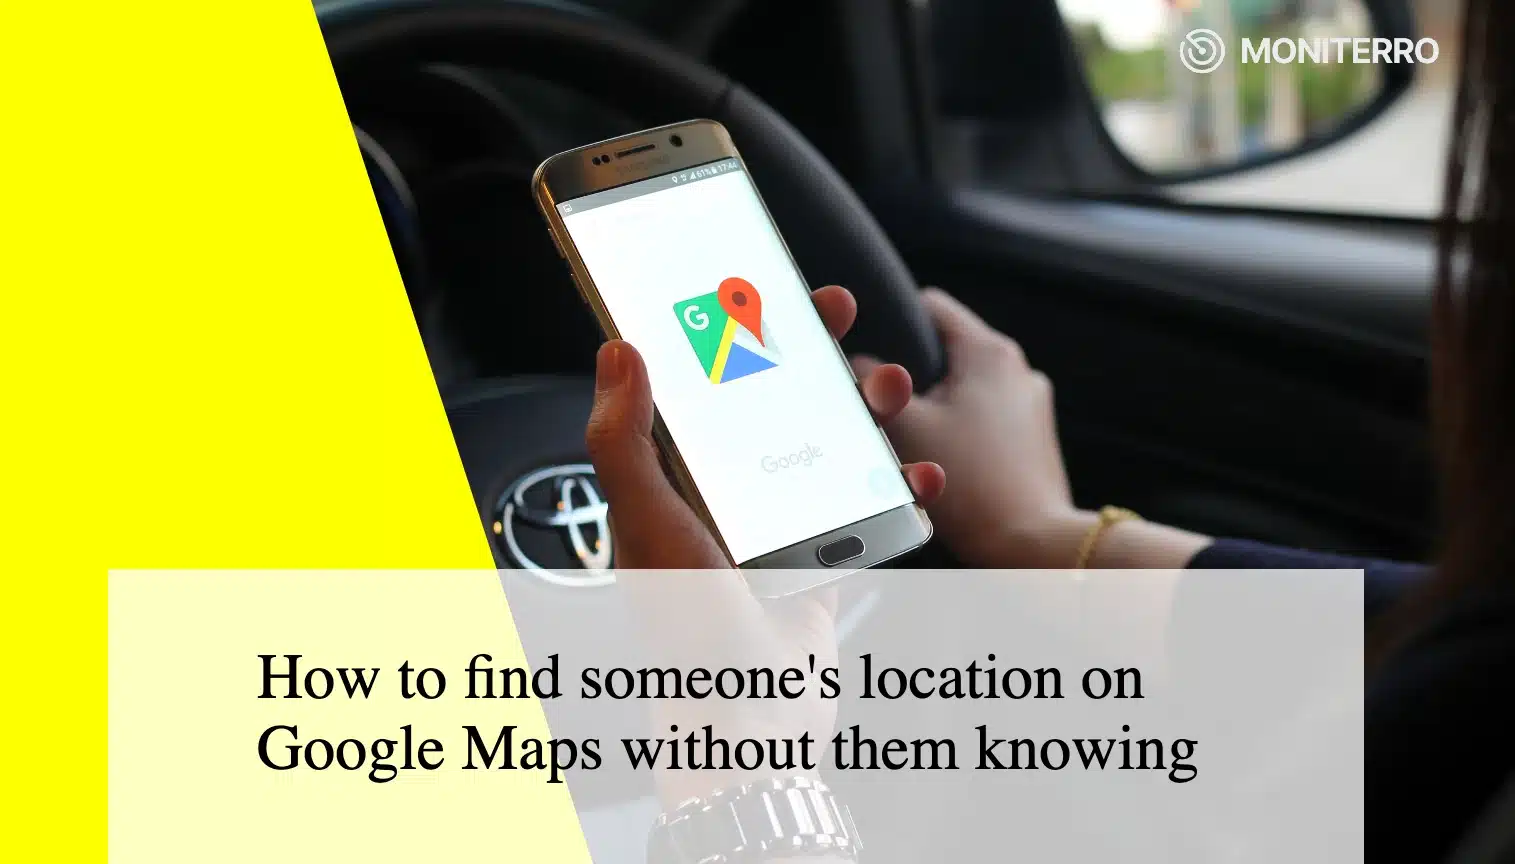 Wie man den Standort einer Person auf Google Maps findet, ohne dass diese es weiß